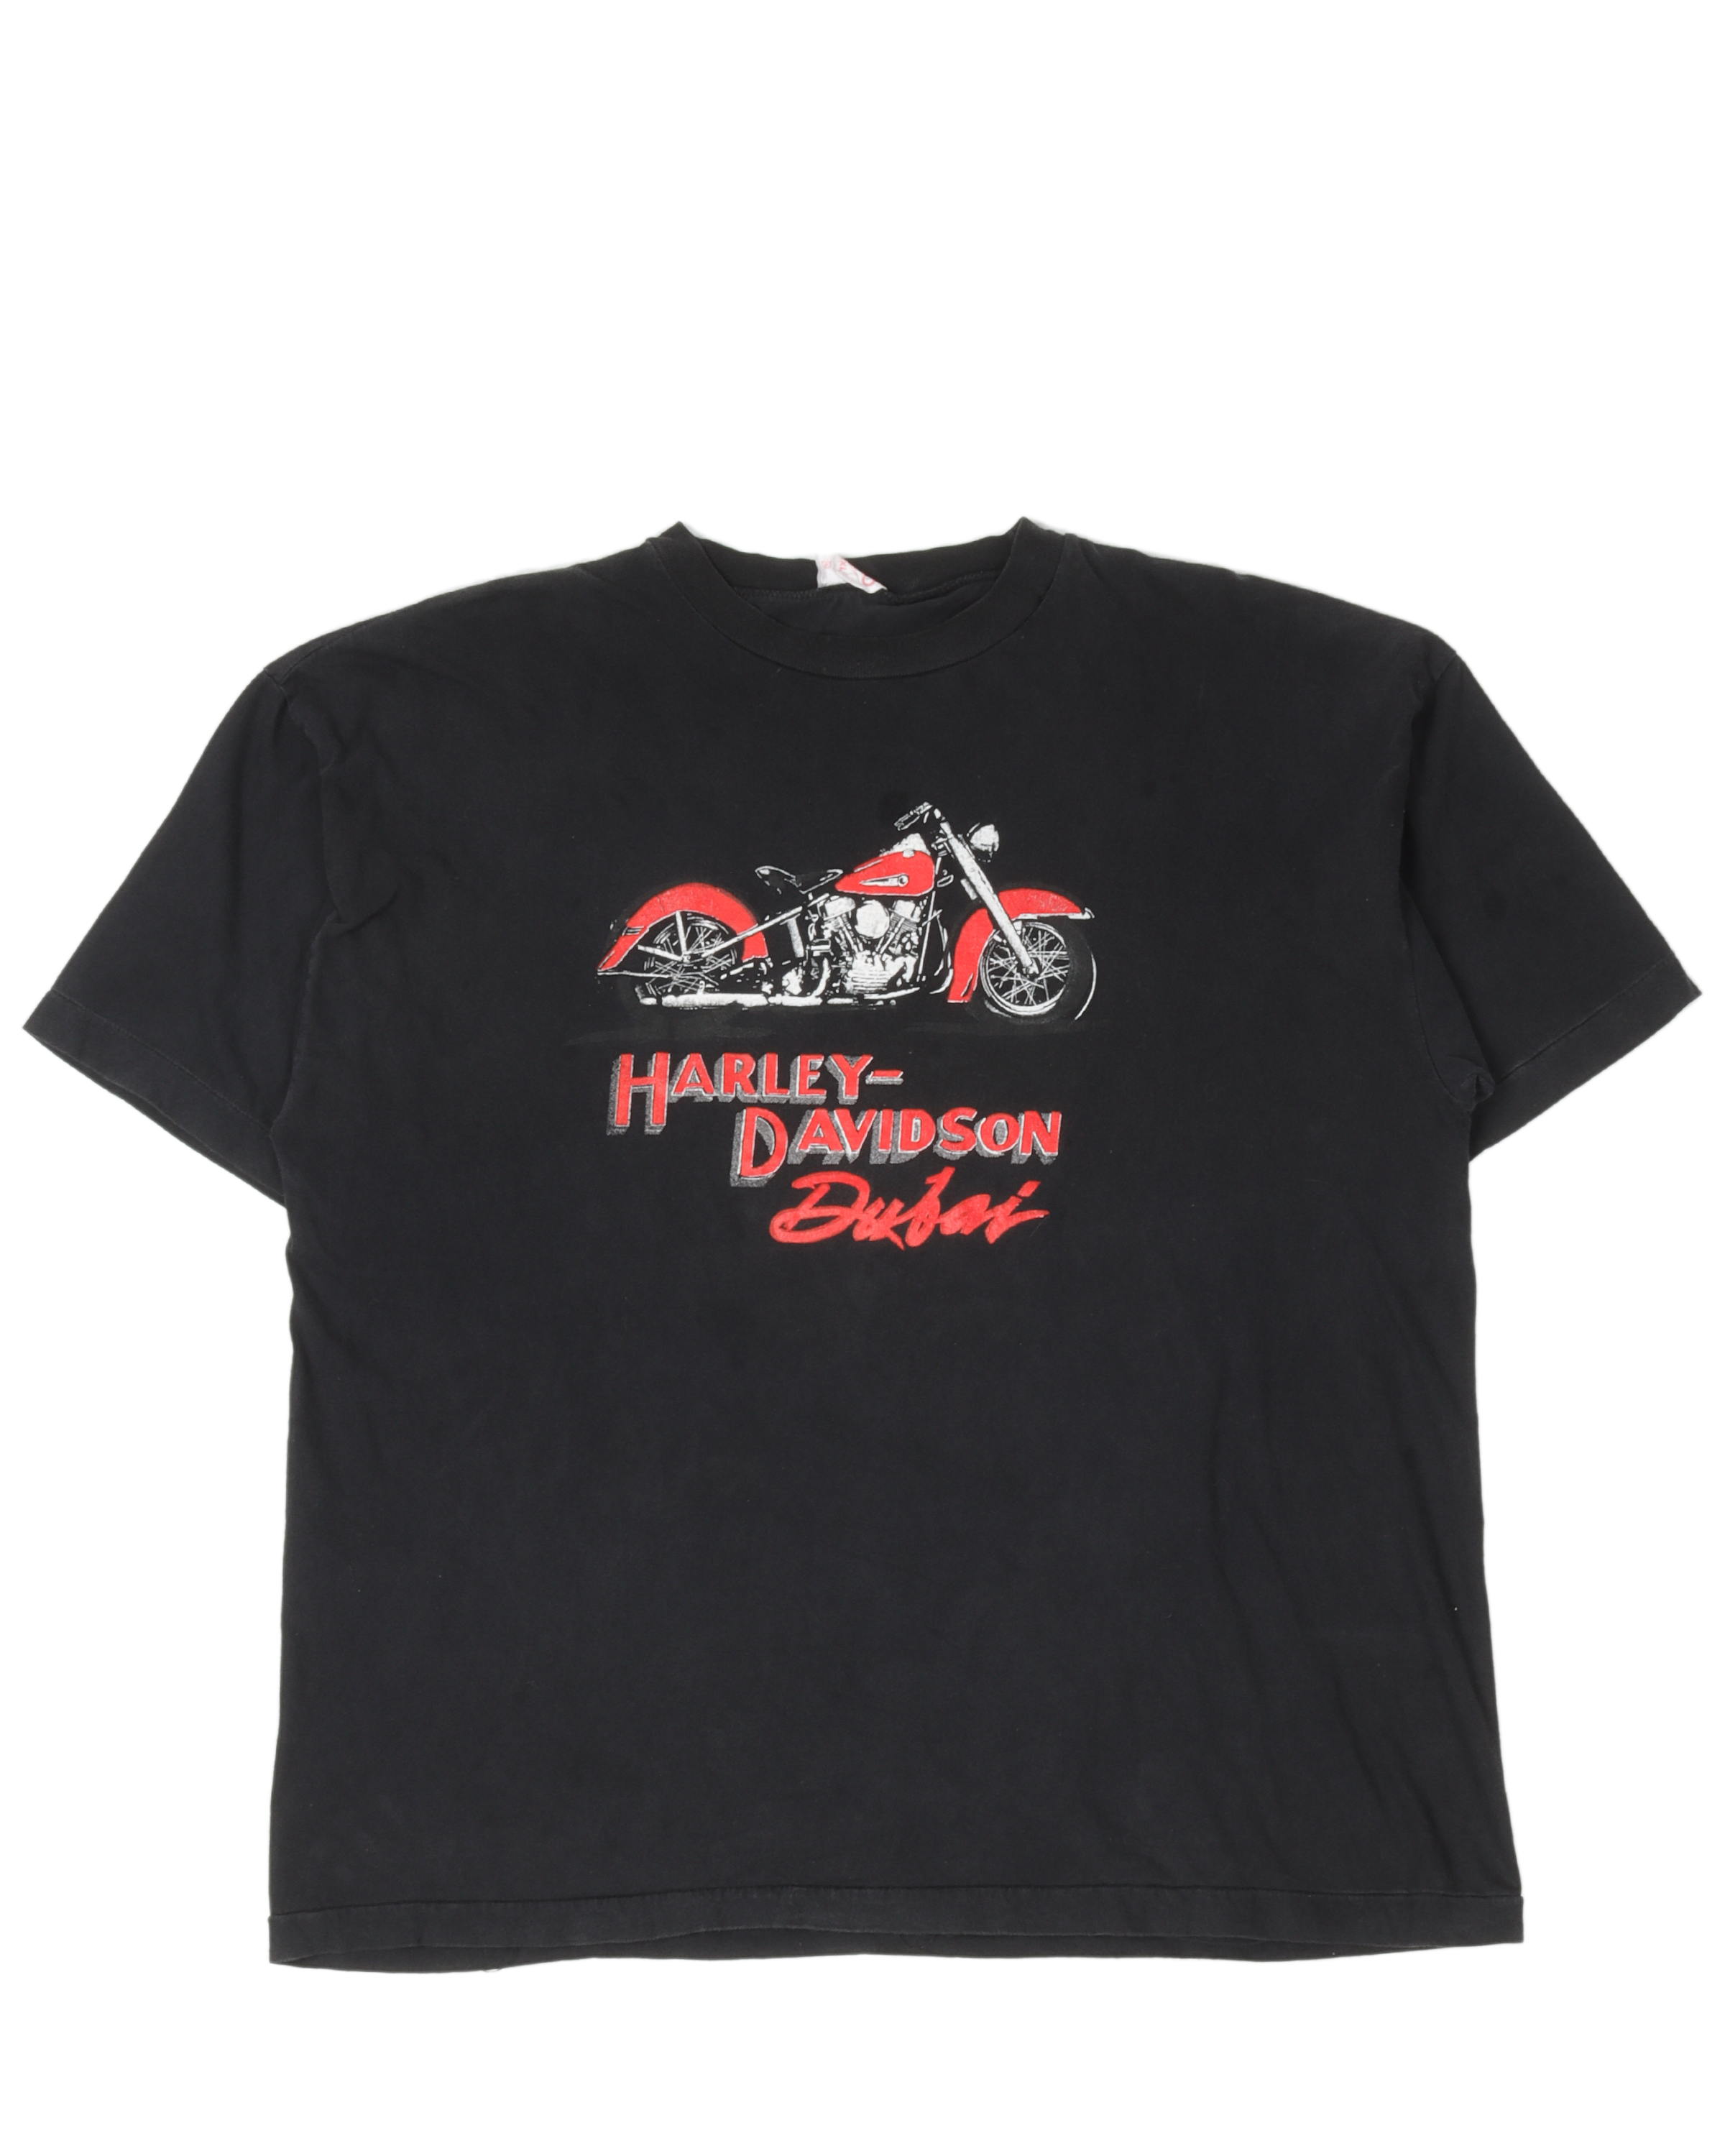 Harley Davidson Dubai T-Shirt